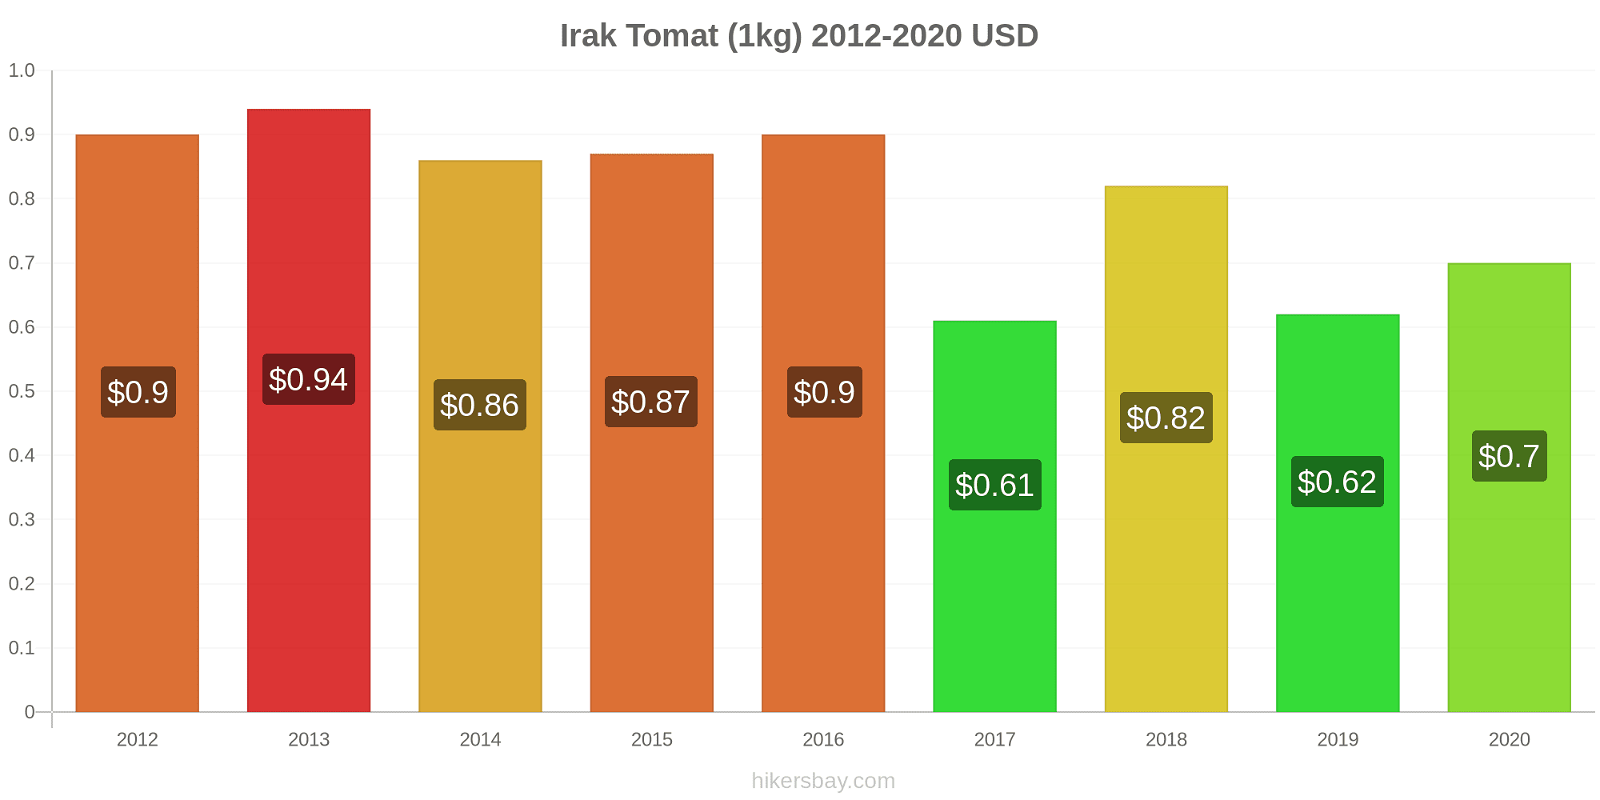 Irak perubahan harga Tomat (1kg) hikersbay.com